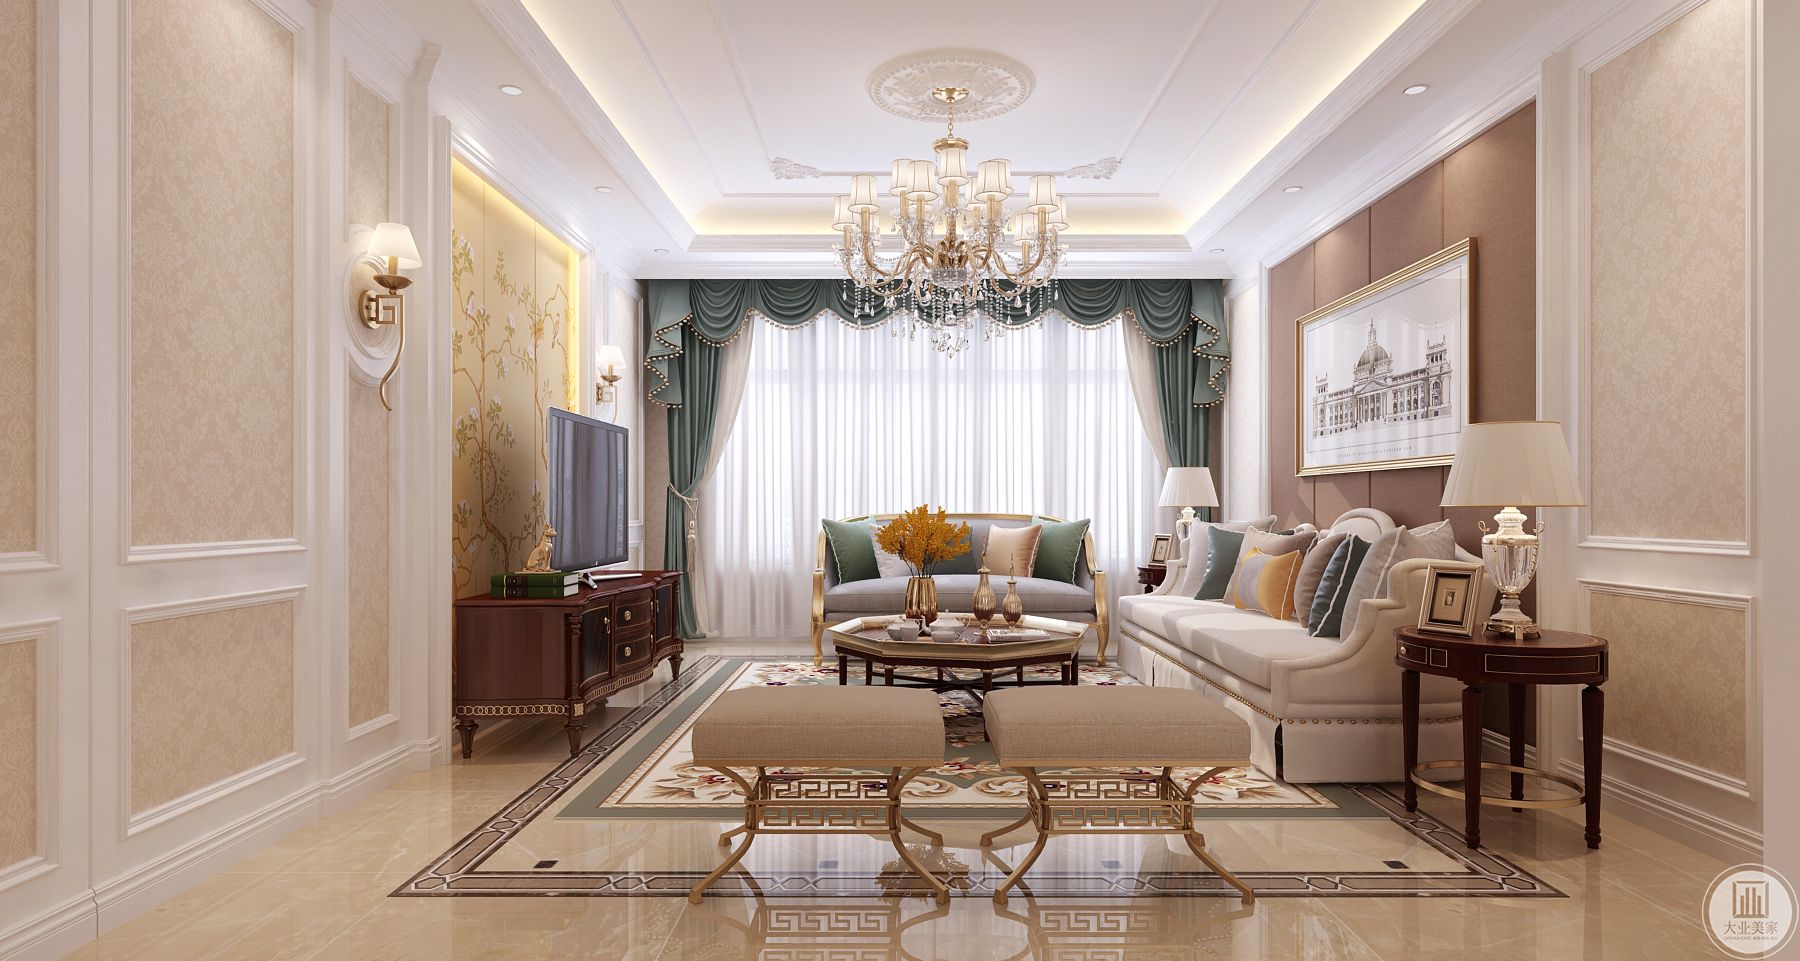 整体以华丽的装饰，精美的造型达到雍容华贵的装饰效果，搭配水晶壁灯营造气氛。而米黄色而蓝色系欧式沙发更是带着清幽，让空间格外华贵，精致细腻中有舒适平和的雅调。 